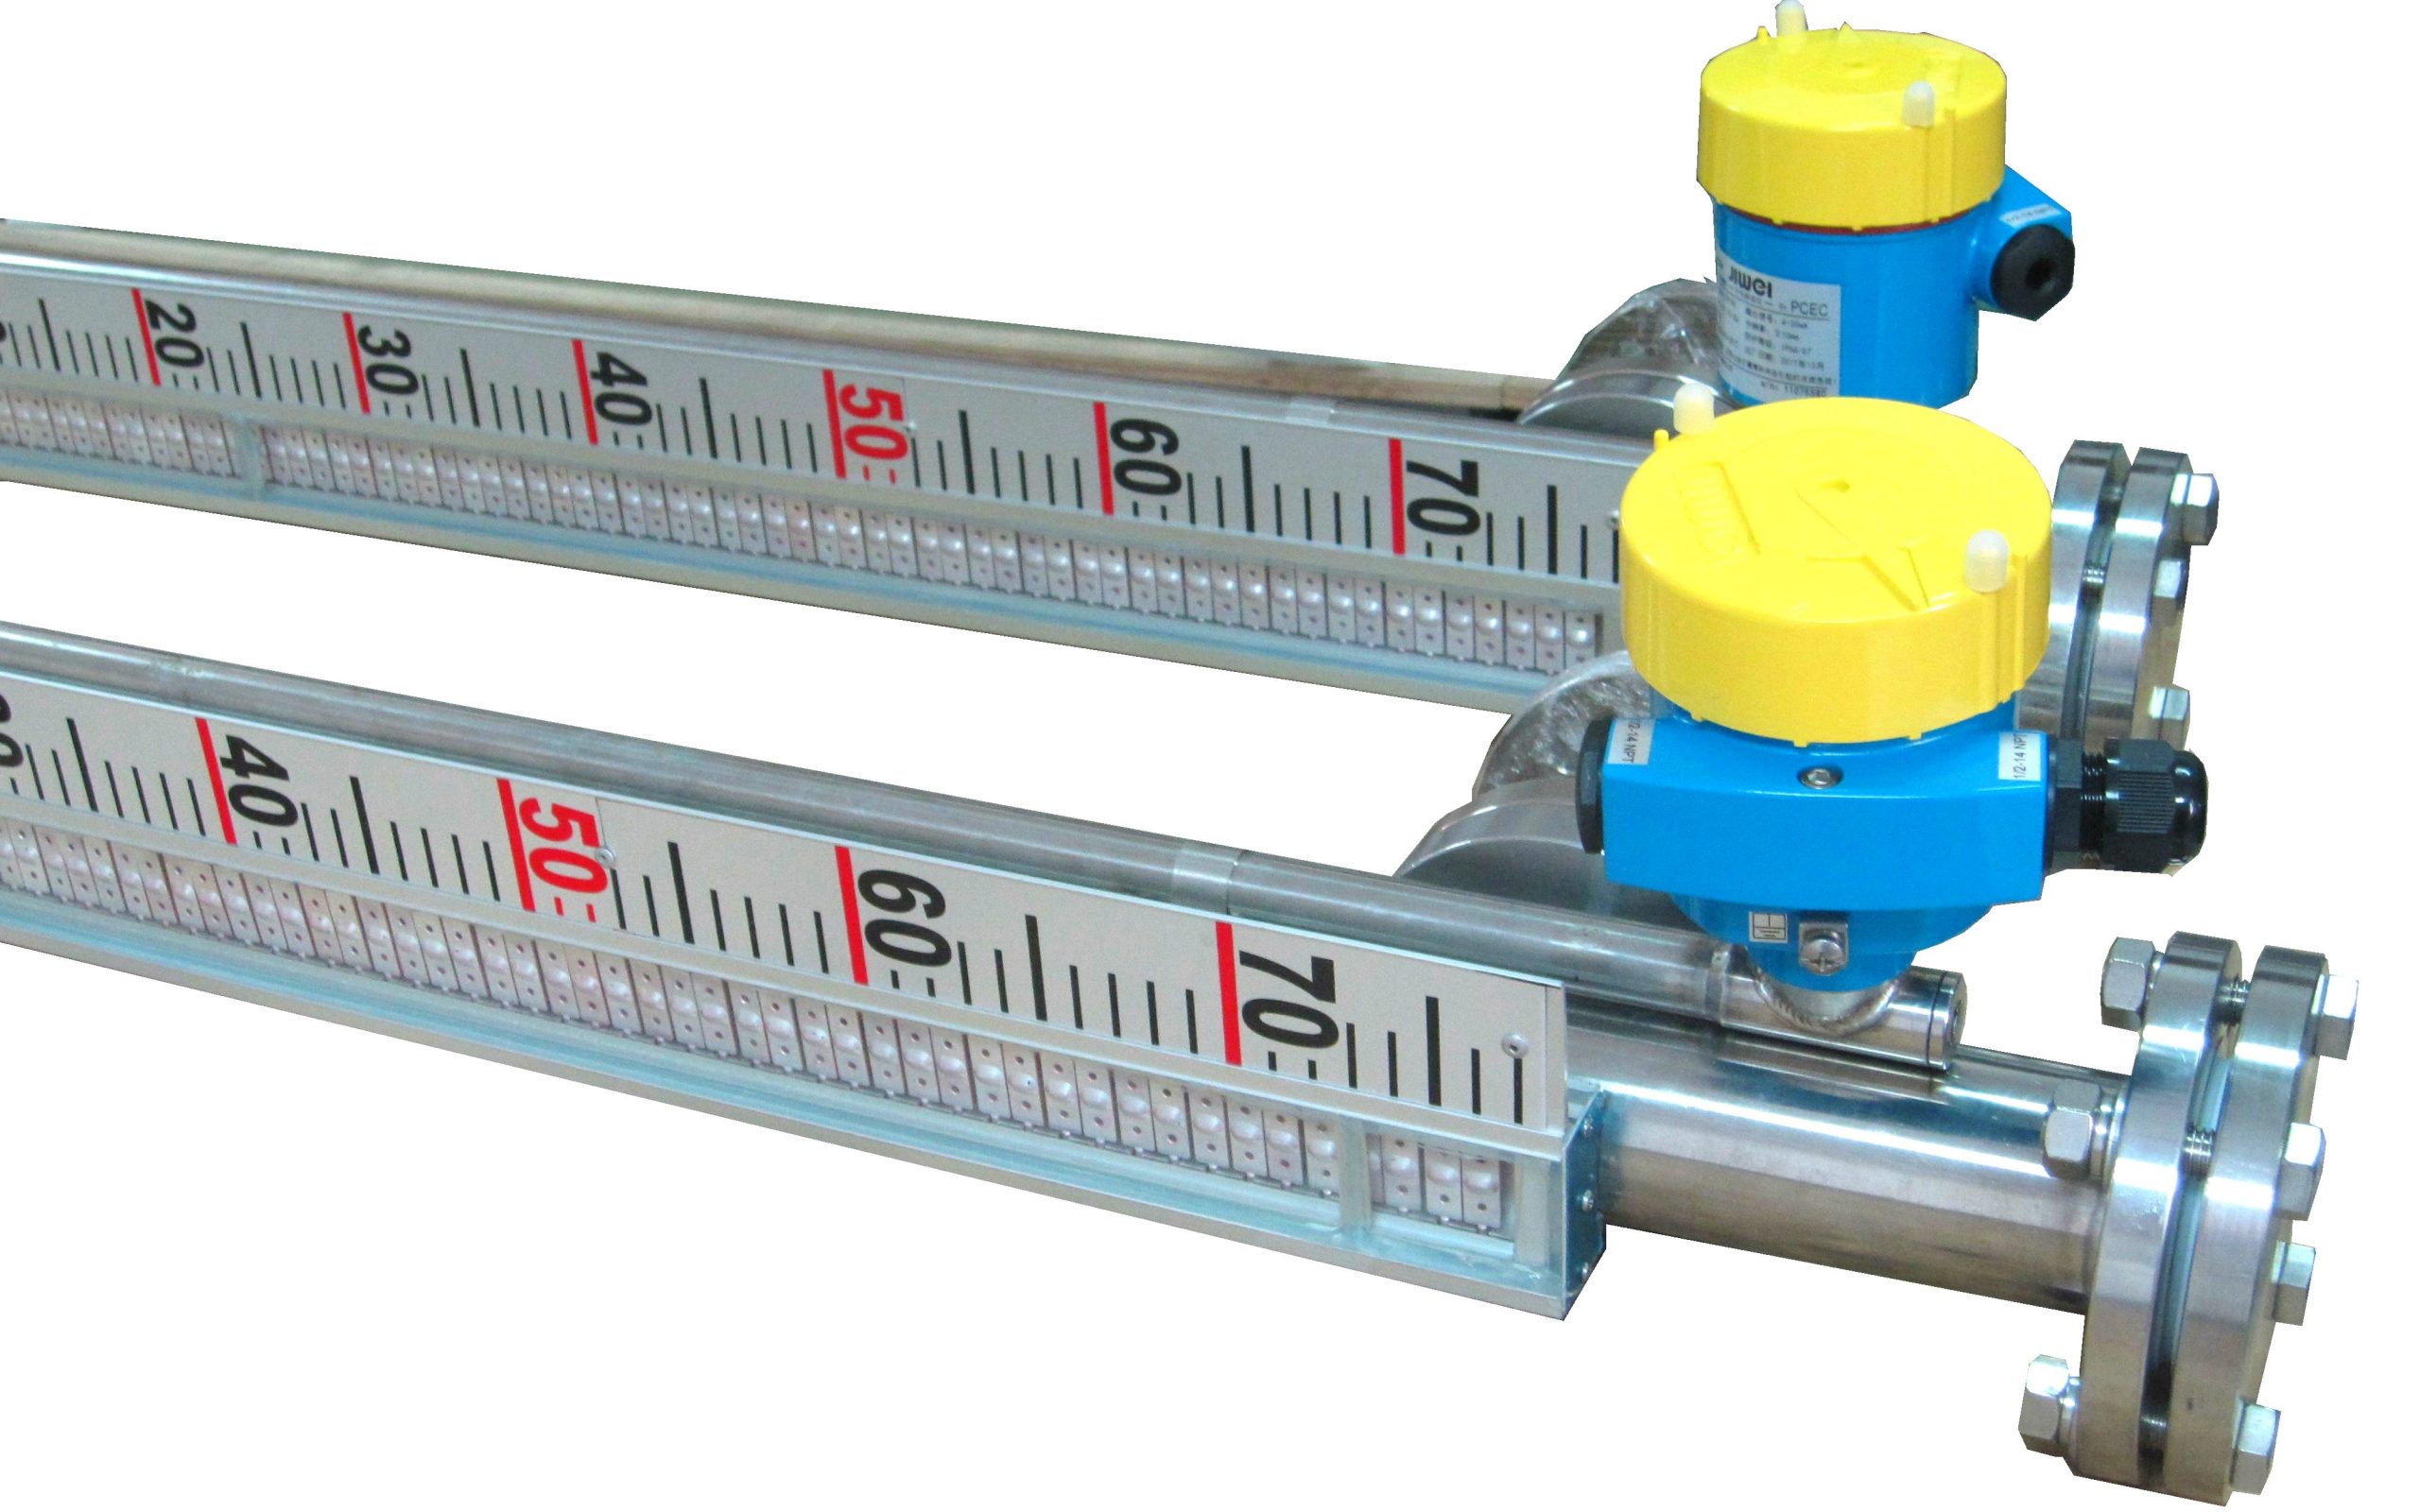 计为磁翻板液位计系列产品通过SIL2/SIL3功能安全评估认证